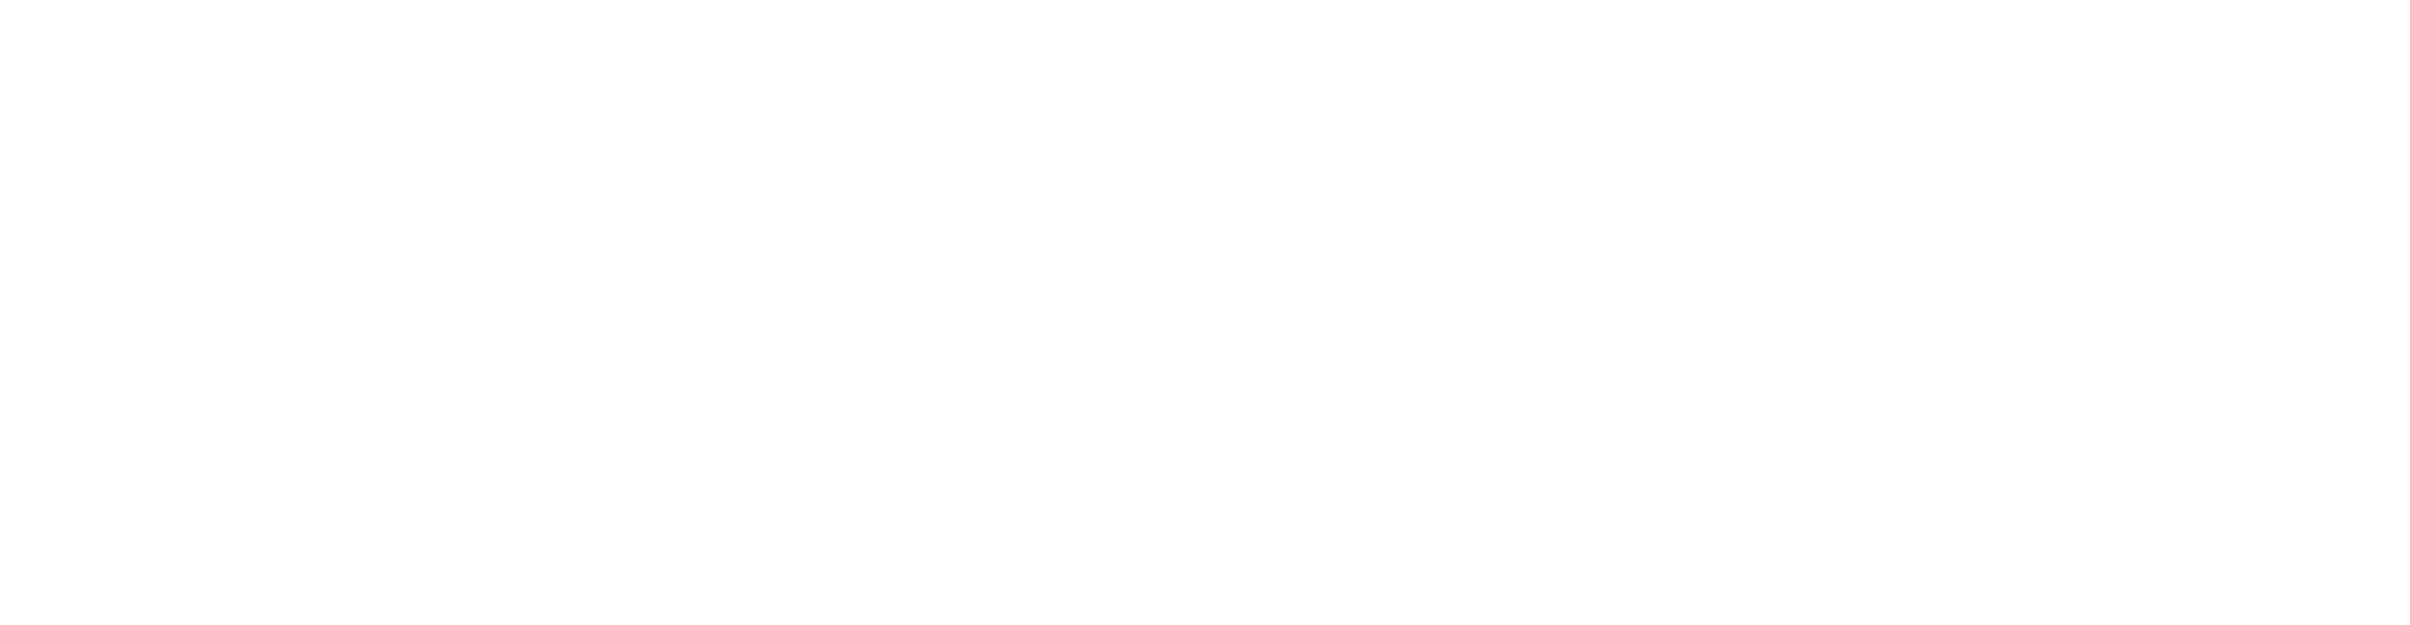 Logotipo de la AAEE en blanco